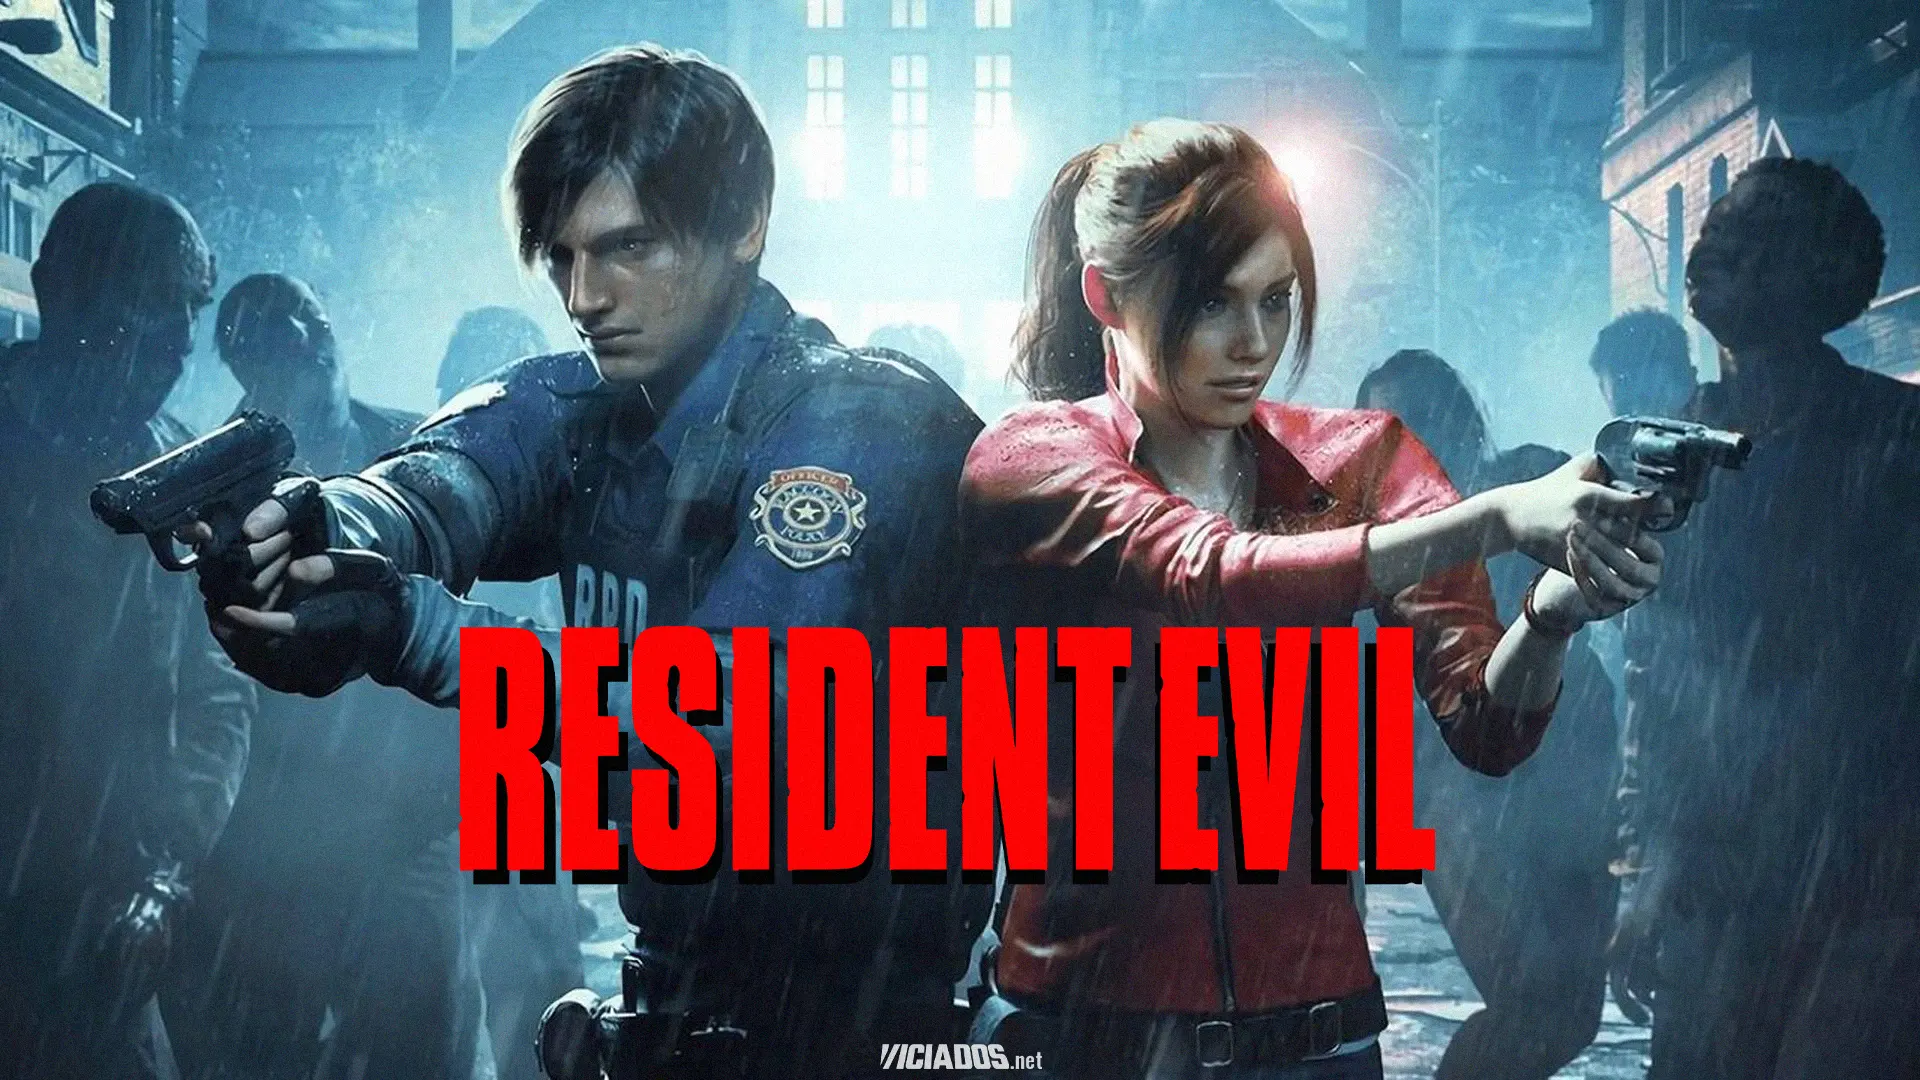 Quer comprar algum Resident Evil? Franquia da Capcom está em promoção na Steam! 2023 Viciados